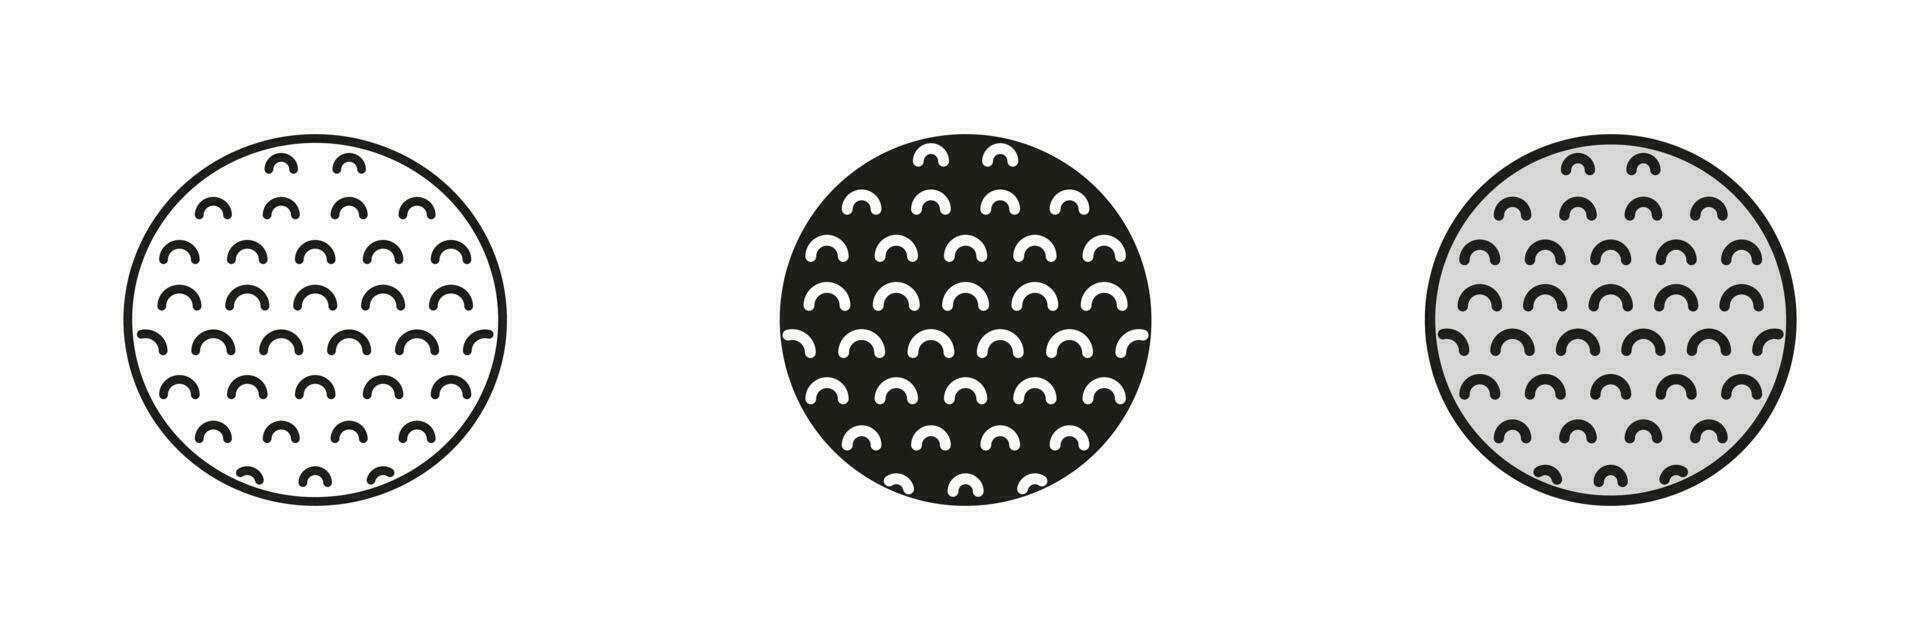 golf boll svart silhuett och linje ikon uppsättning. boll för spela sporter spel fast och översikt svart och Färg symboler samling på vit bakgrund. isolerat vektor illustration.